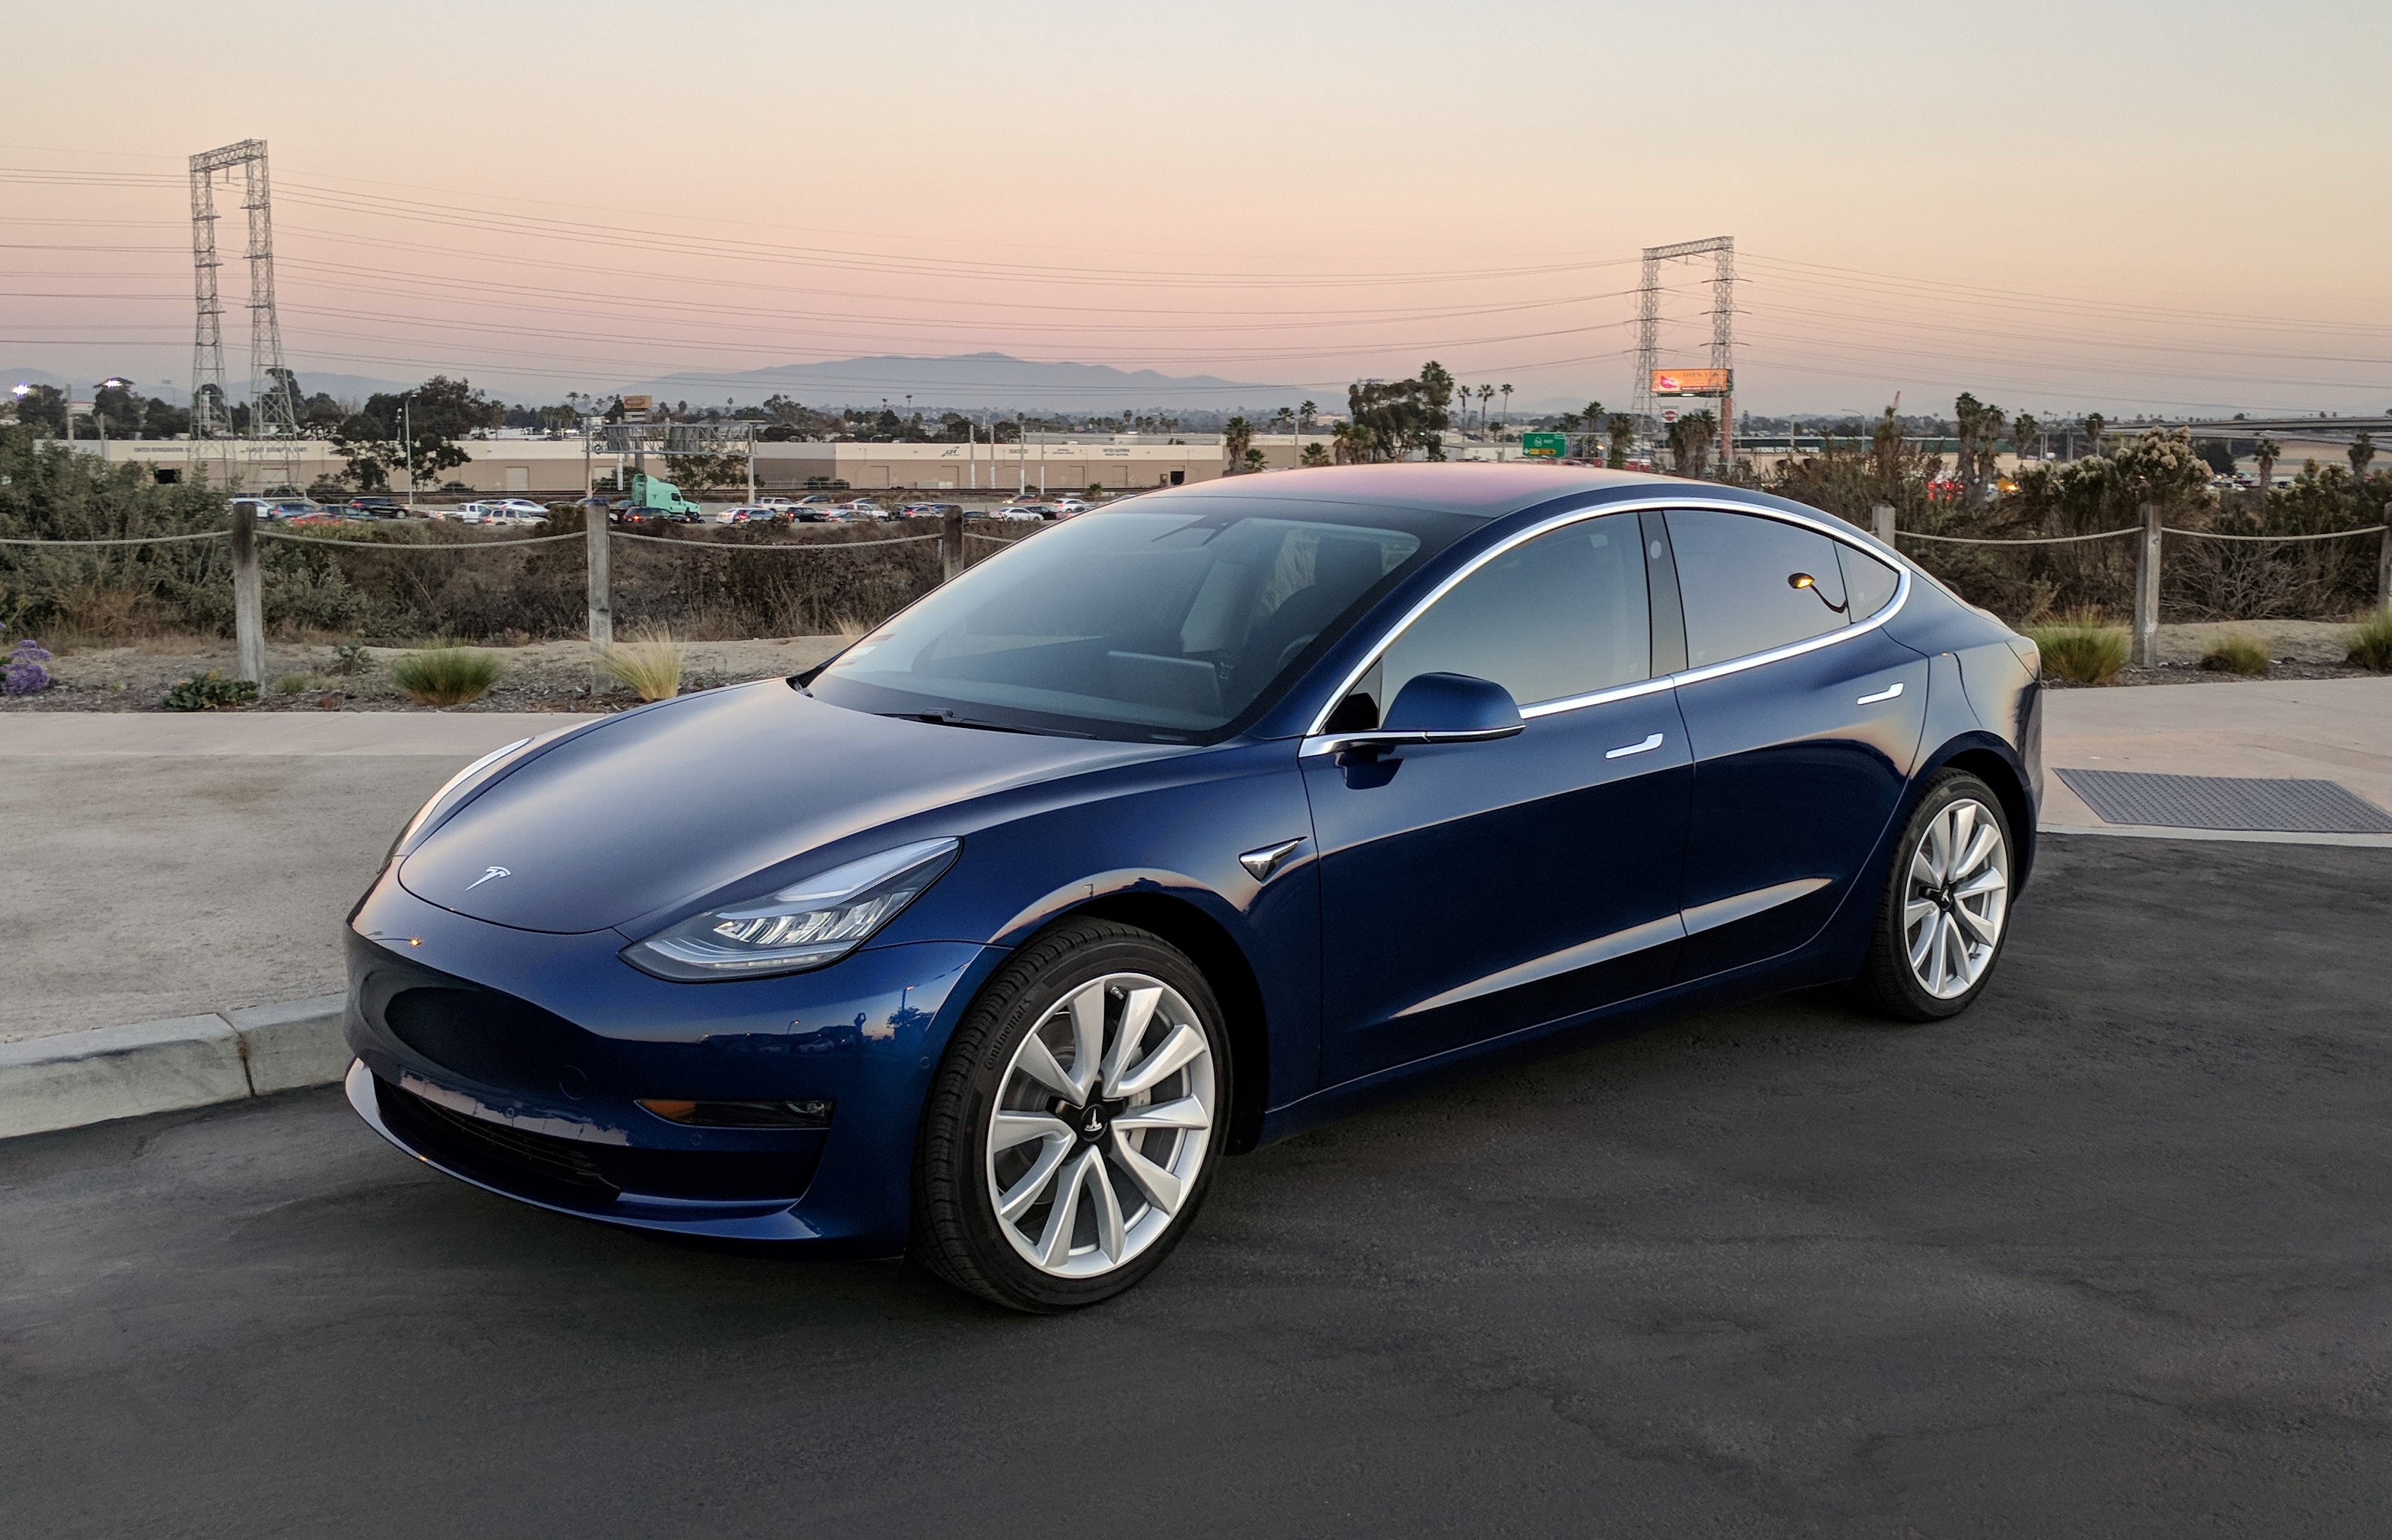 Илон Маск рассказал о двухмоторной версии Tesla Model 3, которая будет разгоняться до 100 км/ч за 3,5 с